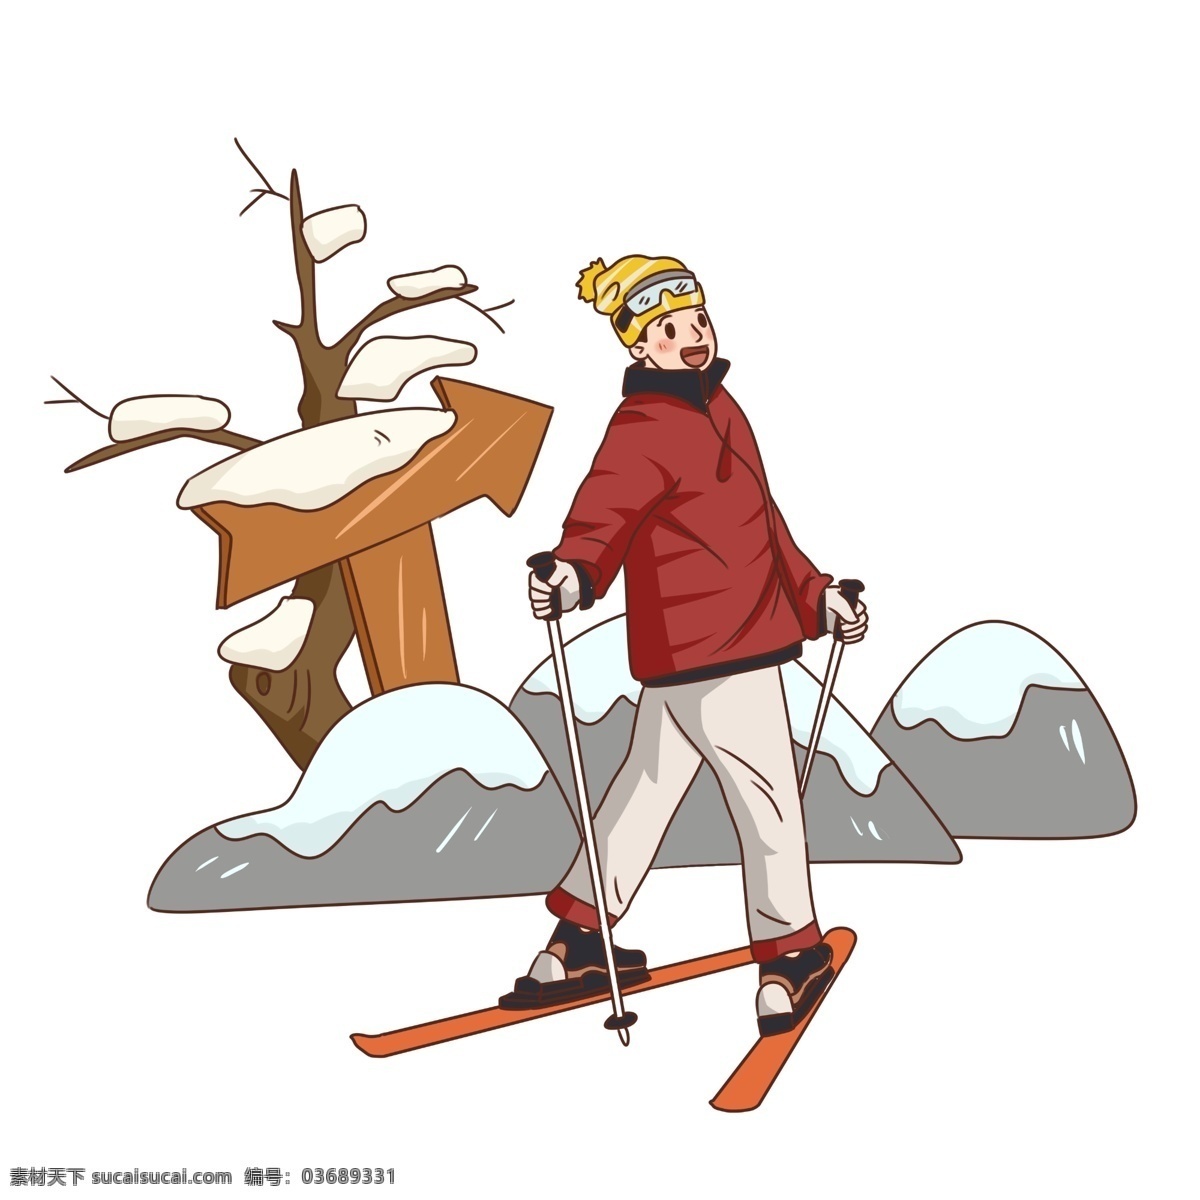 手绘 冬季 旅游 雪上 运动 滑雪 插画 冬季旅游 雪上运动 雪原 滑雪板 滑雪杖 滑雪场 滑雪男子 冬日滑雪